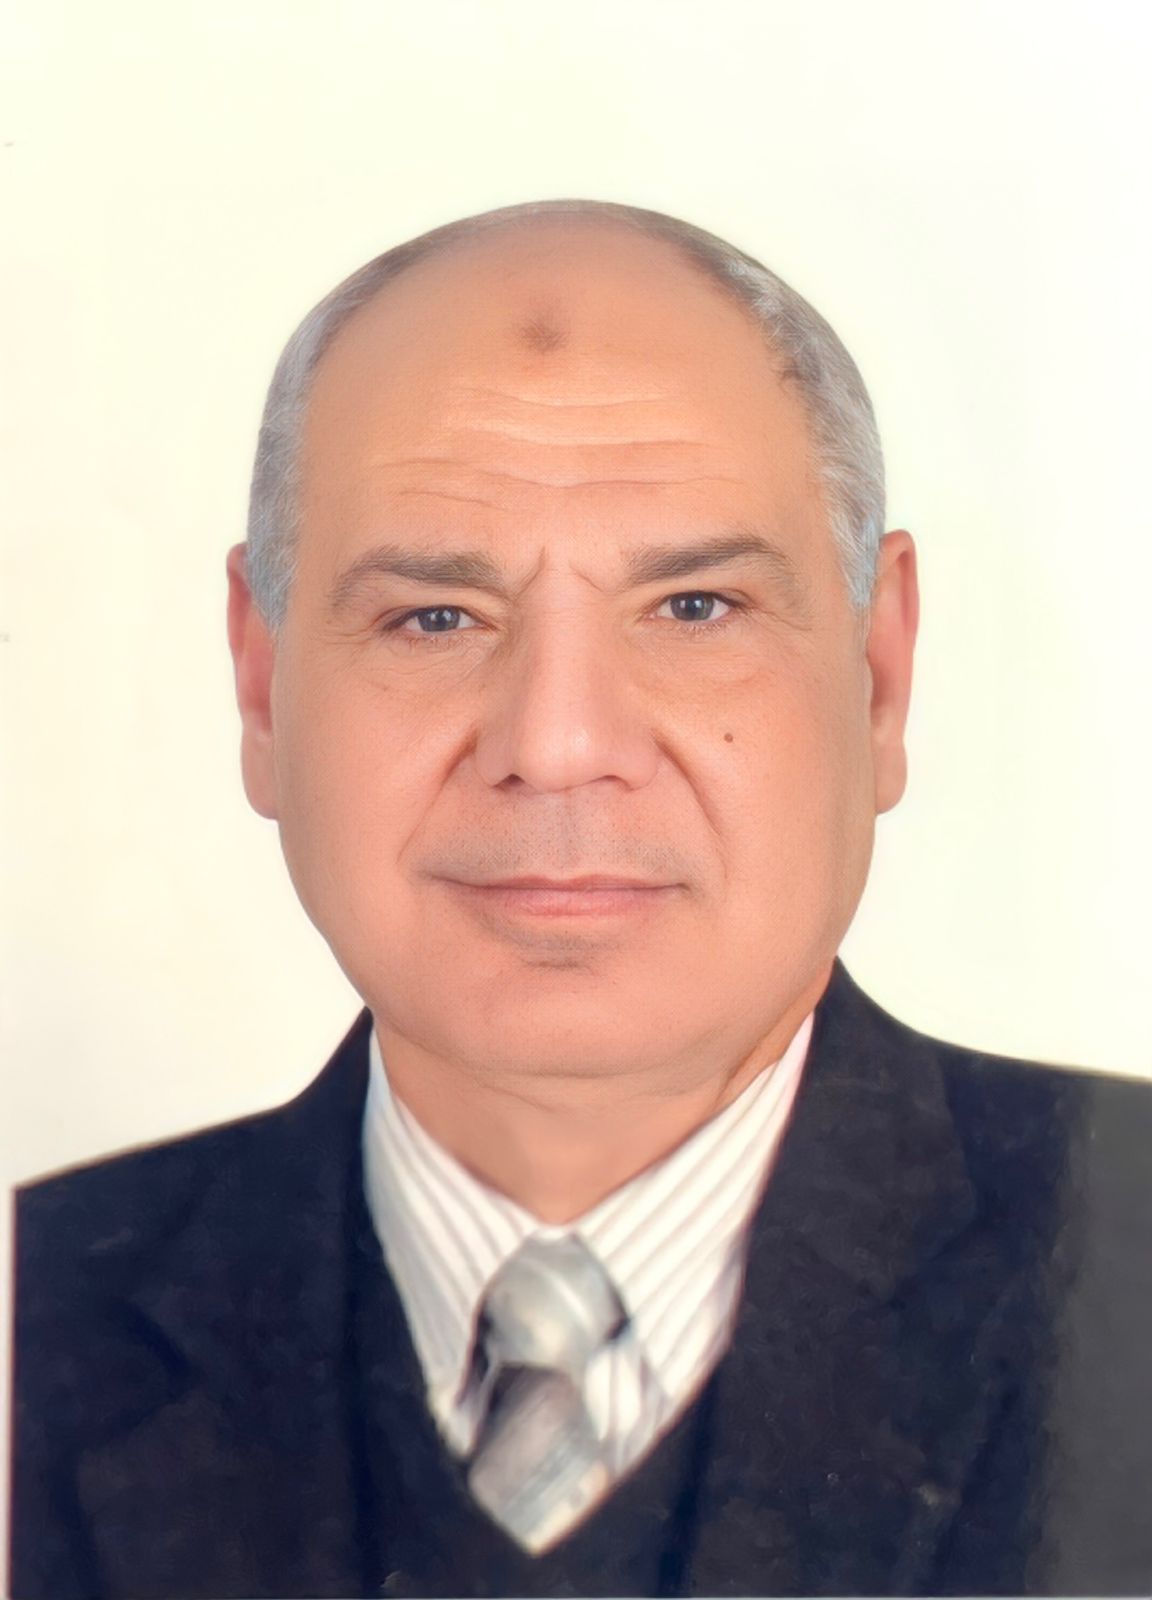 Ahmed S. Zahran